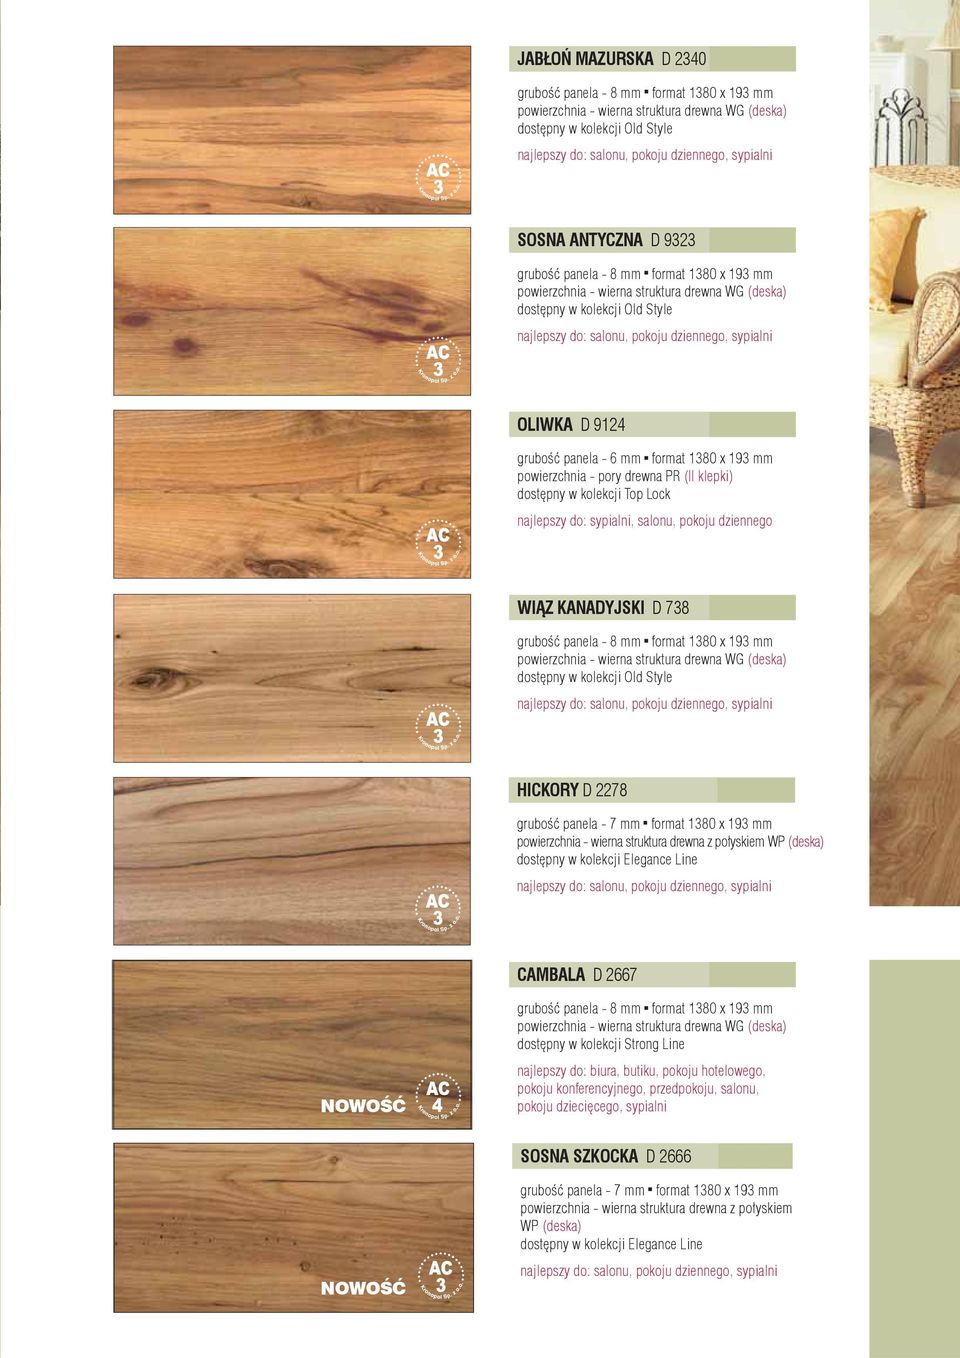 dostępny w kolekcji Old Style HICKORY D 2278 powierzchnia - wierna struktura drewna z połyskiem WP (deska) dostępny w kolekcji Elegance Line CAMBALA D 2667